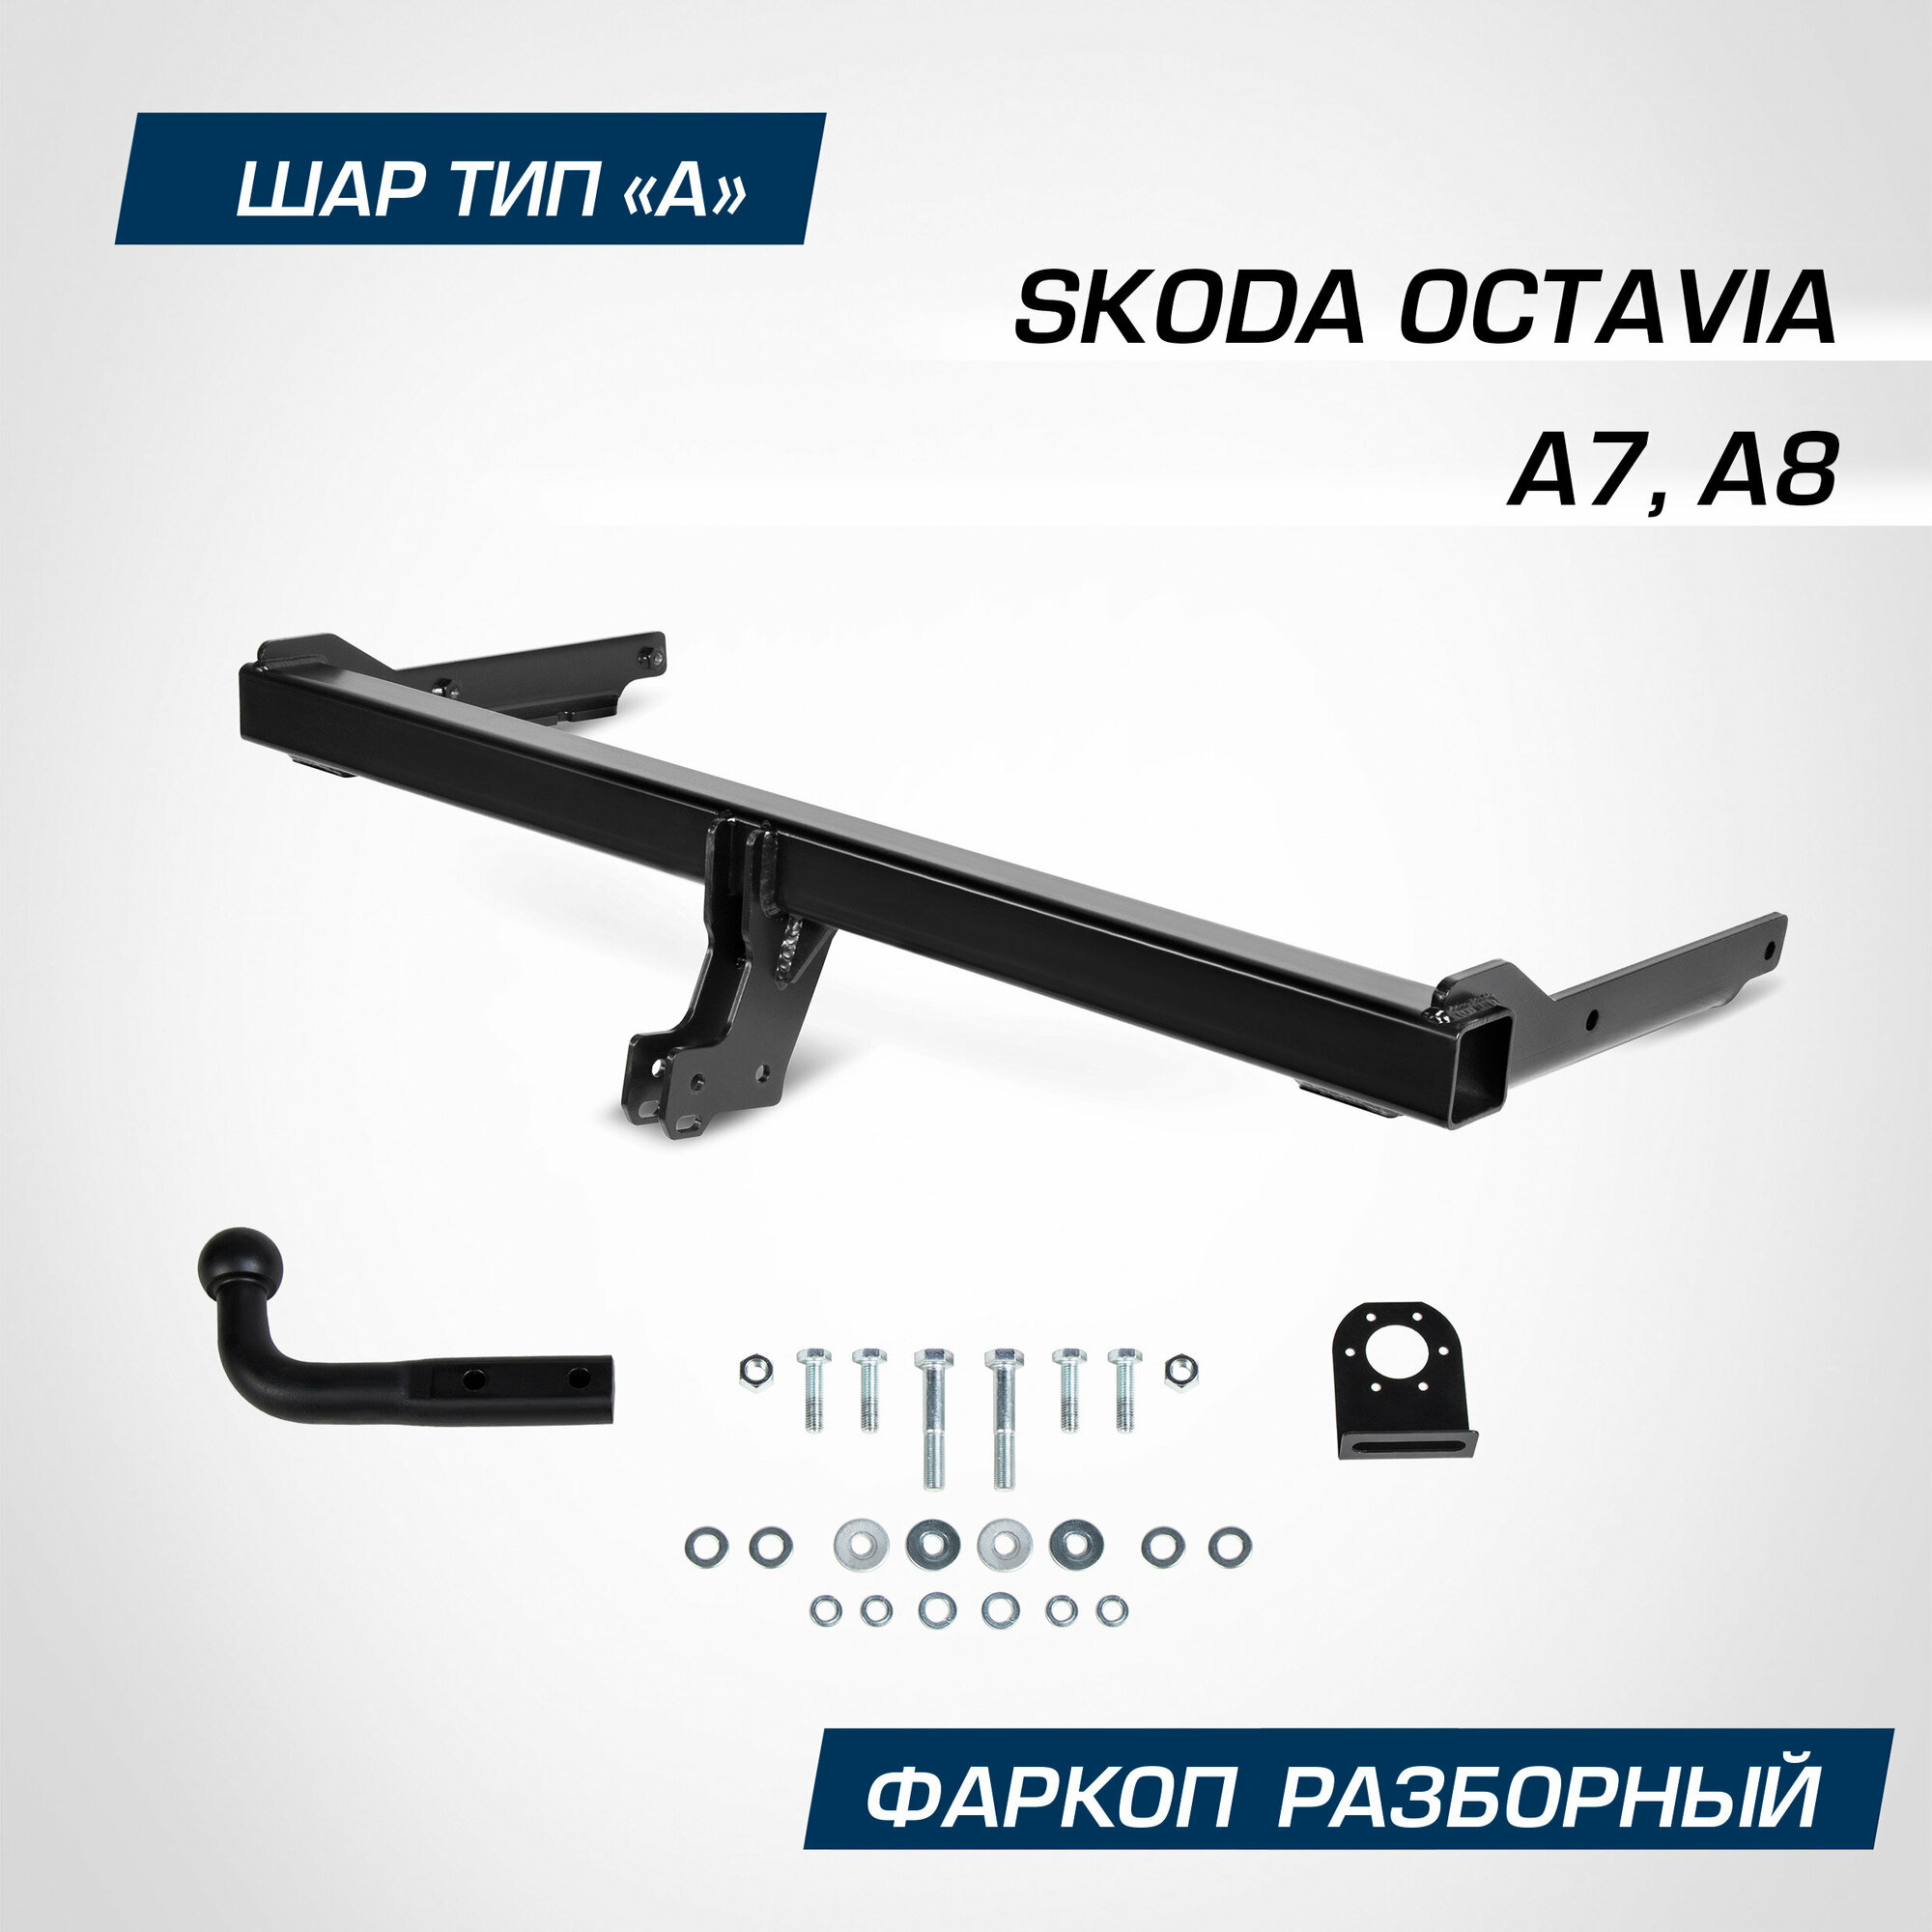 Фаркоп разборный Berg для Skoda Octavia A7 A8 2013-2020 2020-н. в шар A 2000/75 кг F.5113.001